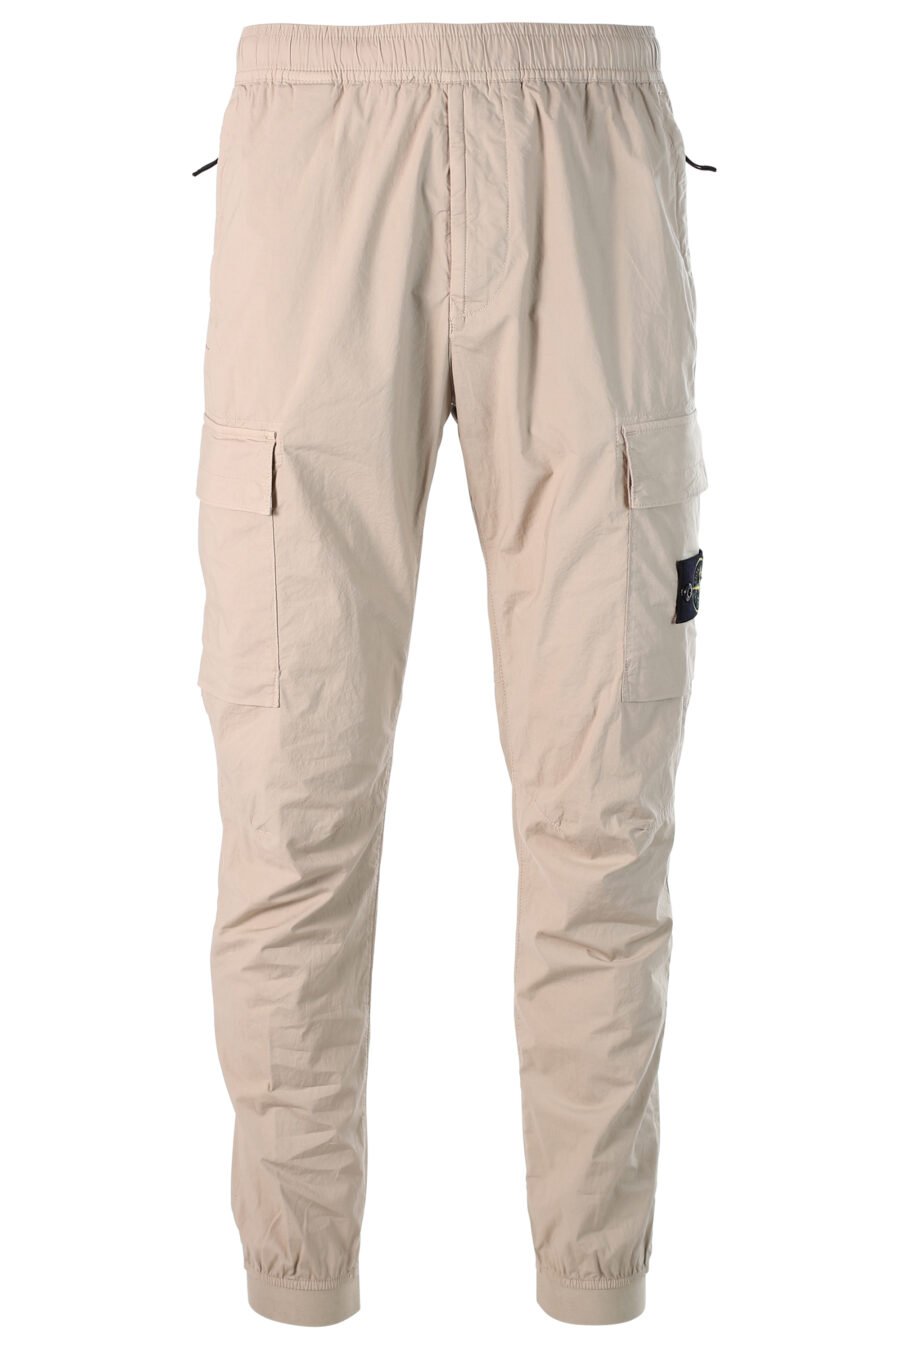 Pantalon cargo beige avec patch - 8052572528552